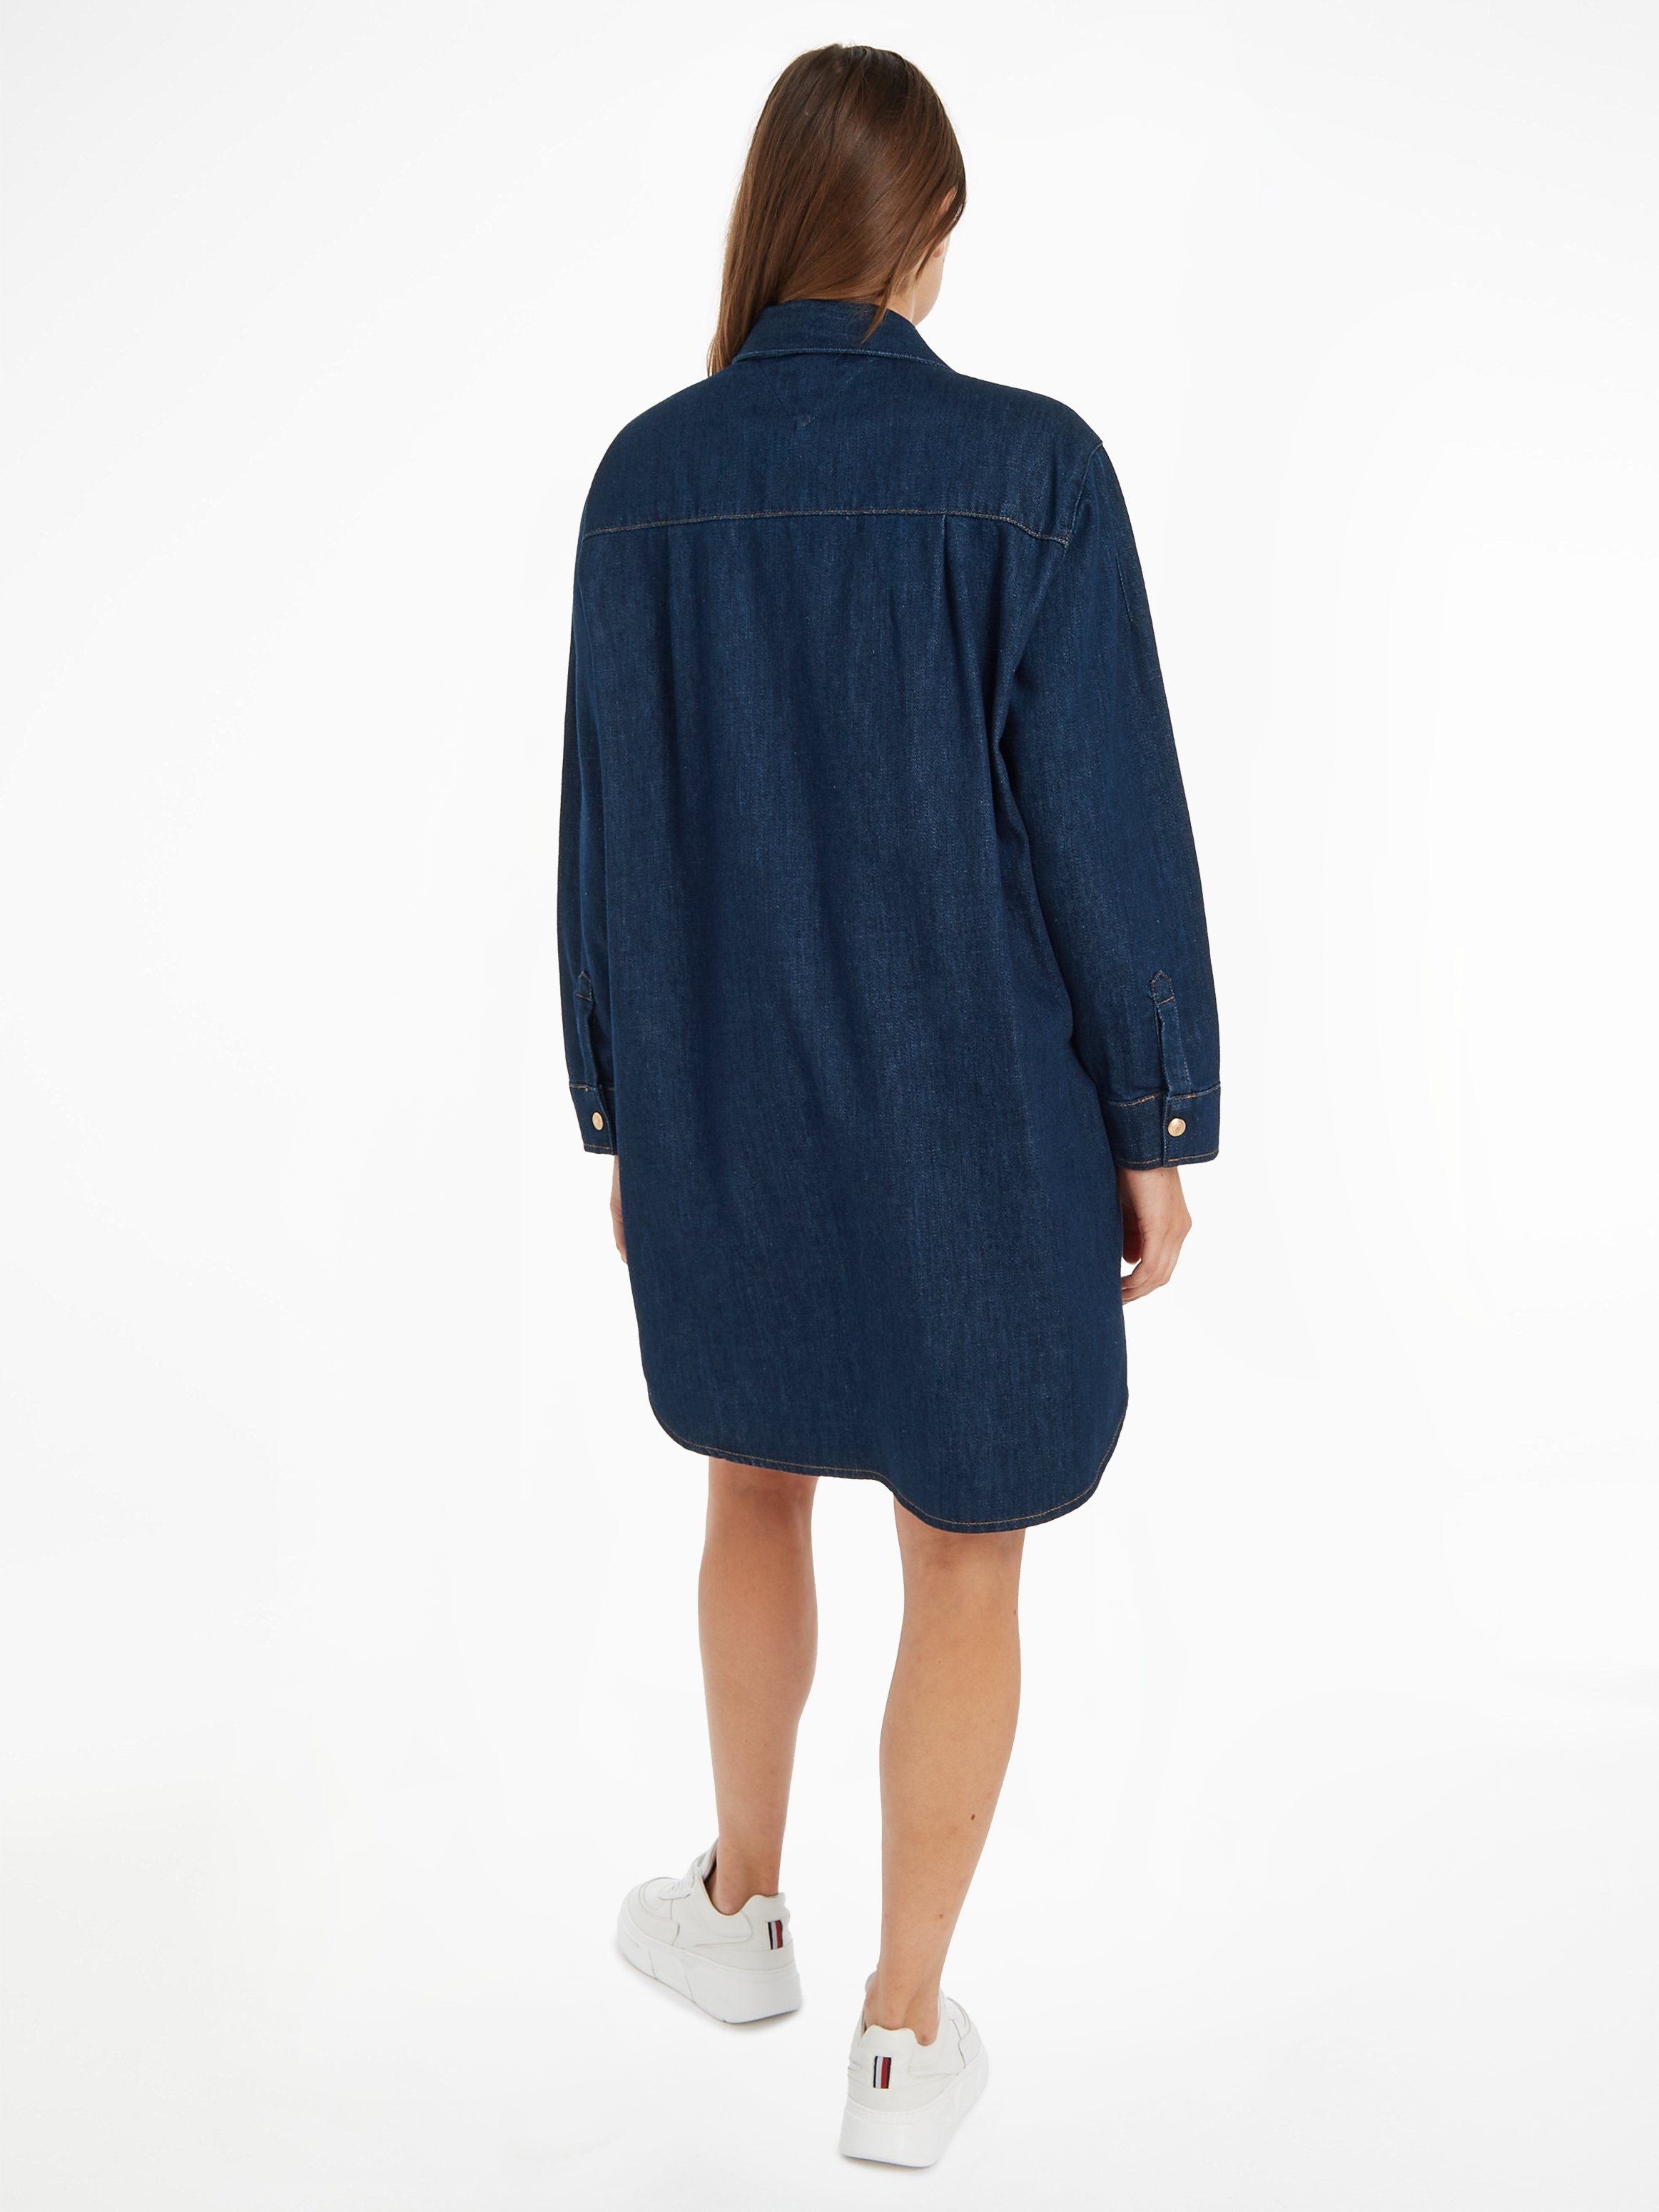 Jeanskleid DRESS Tommy NALA mit LS Druckerleiste Hilfiger durchgehender SHIRT DNM